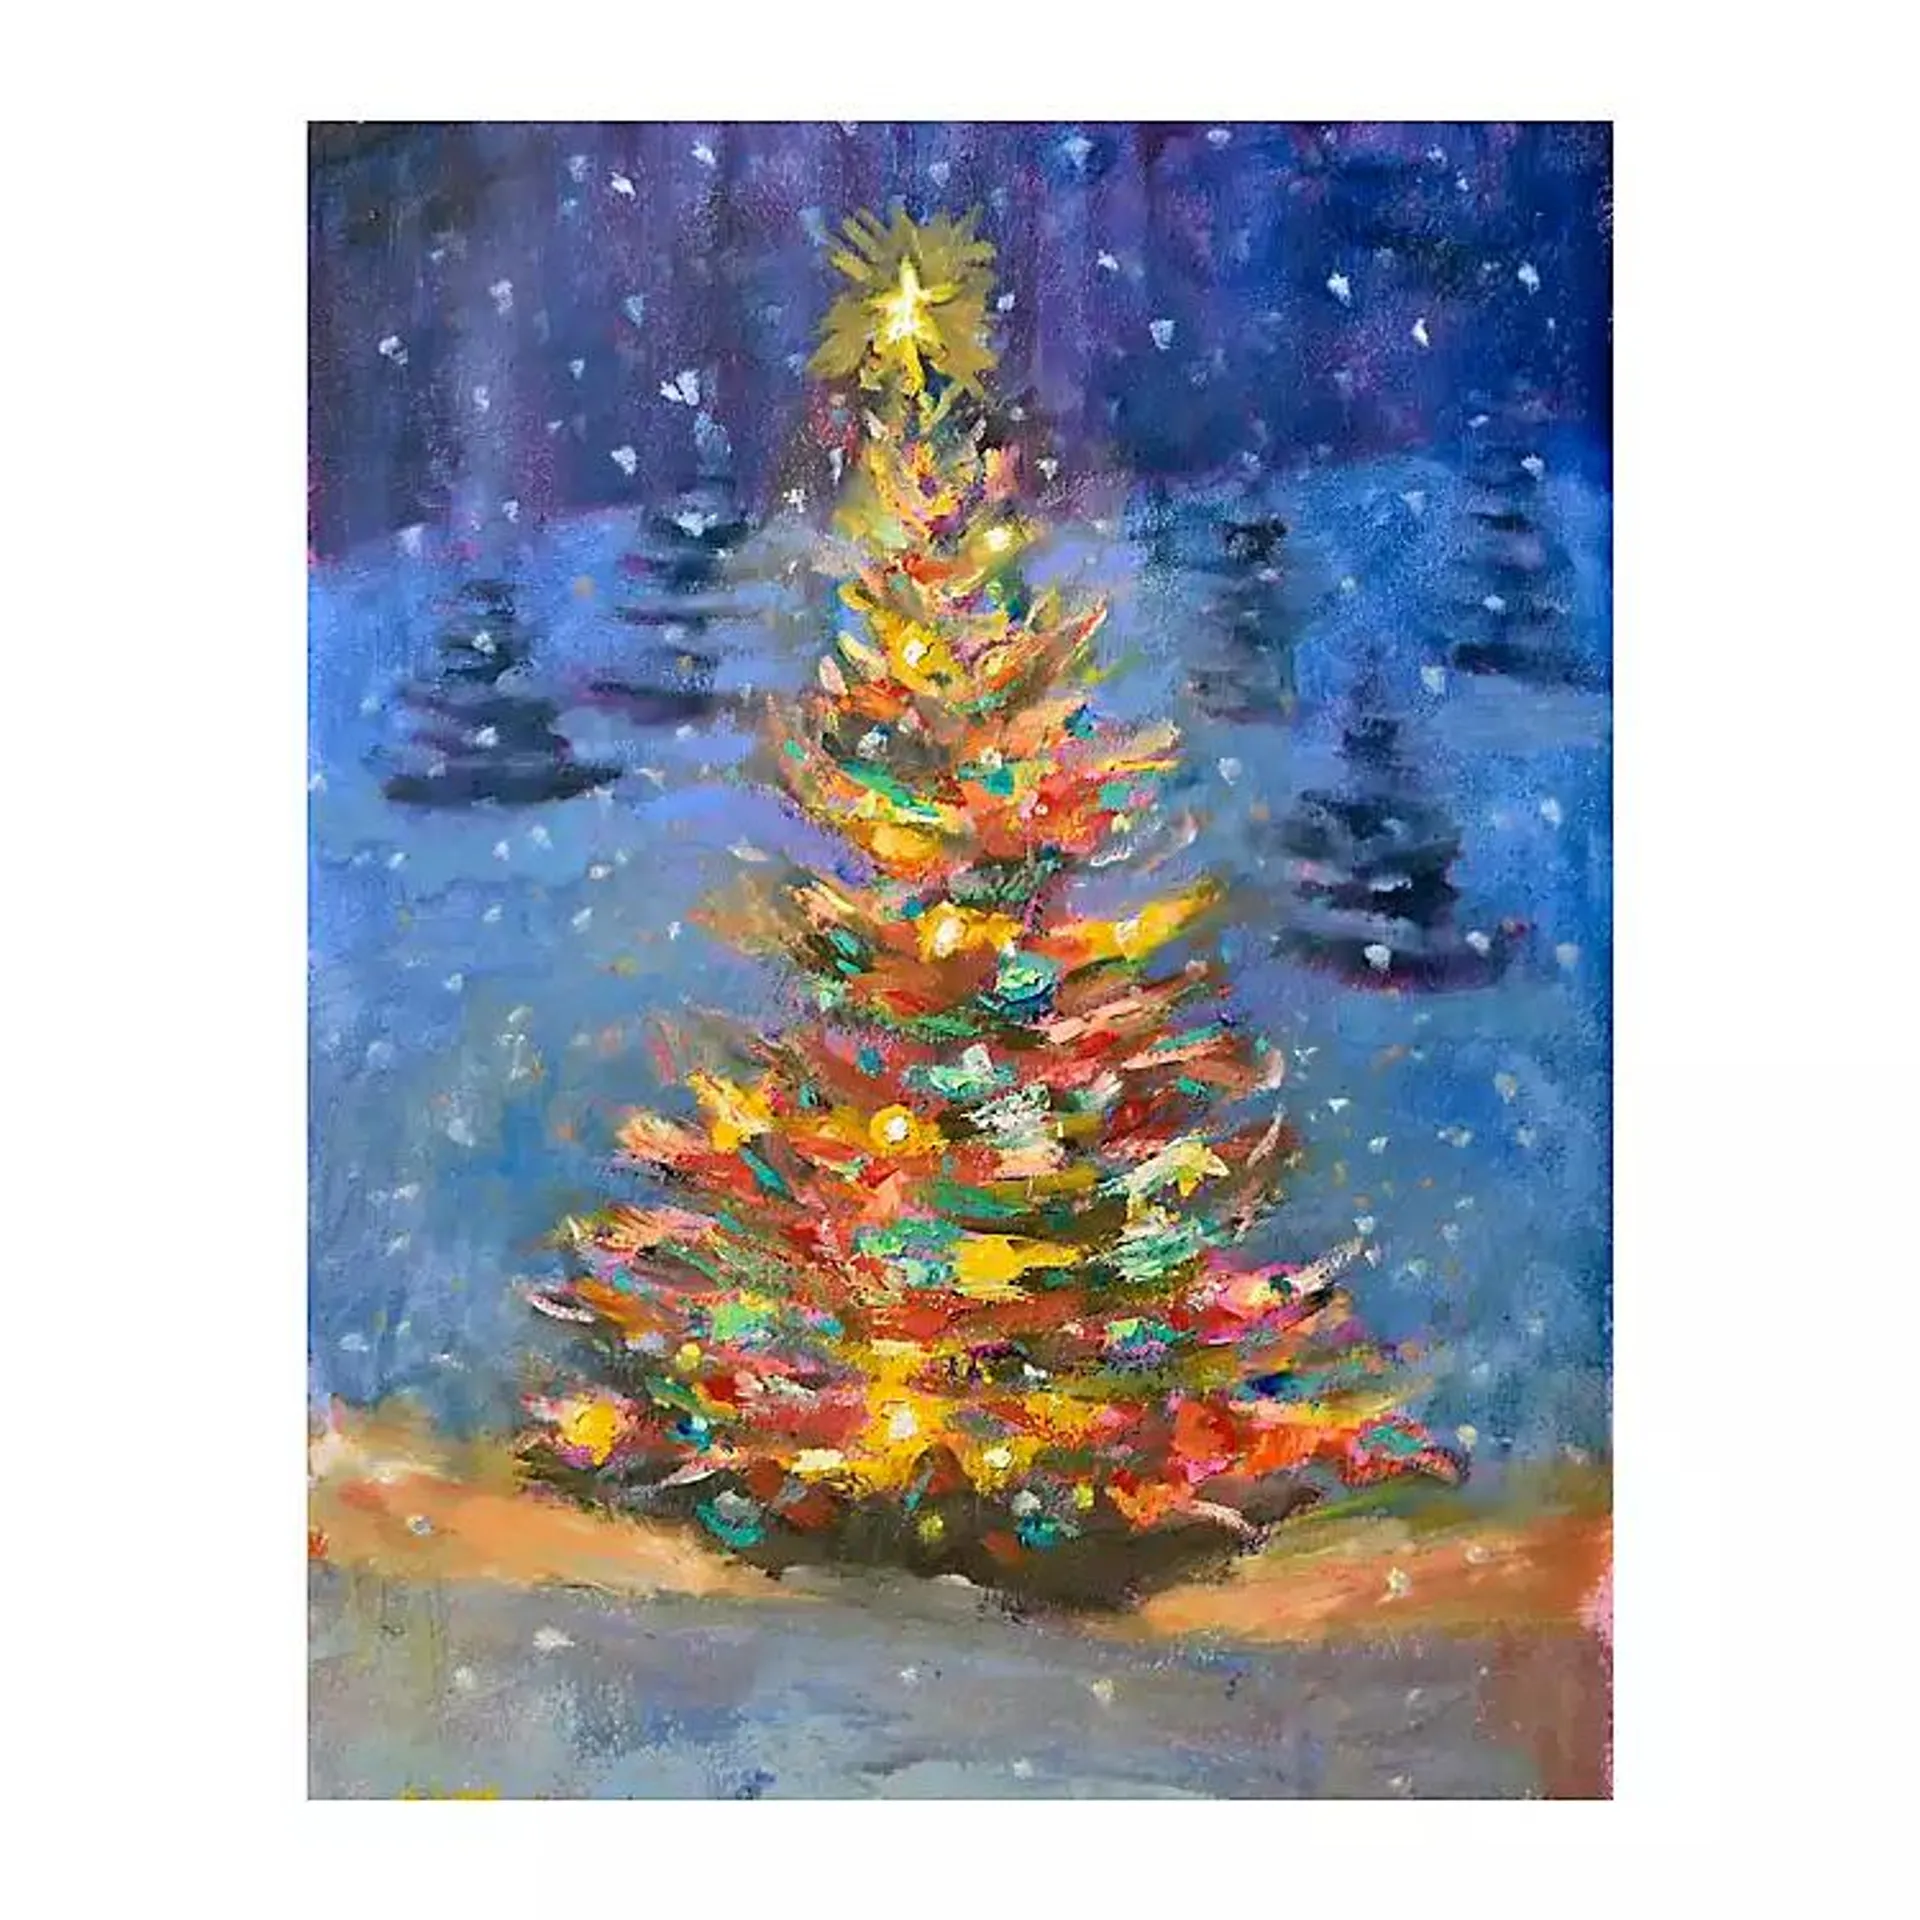 Christmas Tree Multi Lights Canvas Art Print